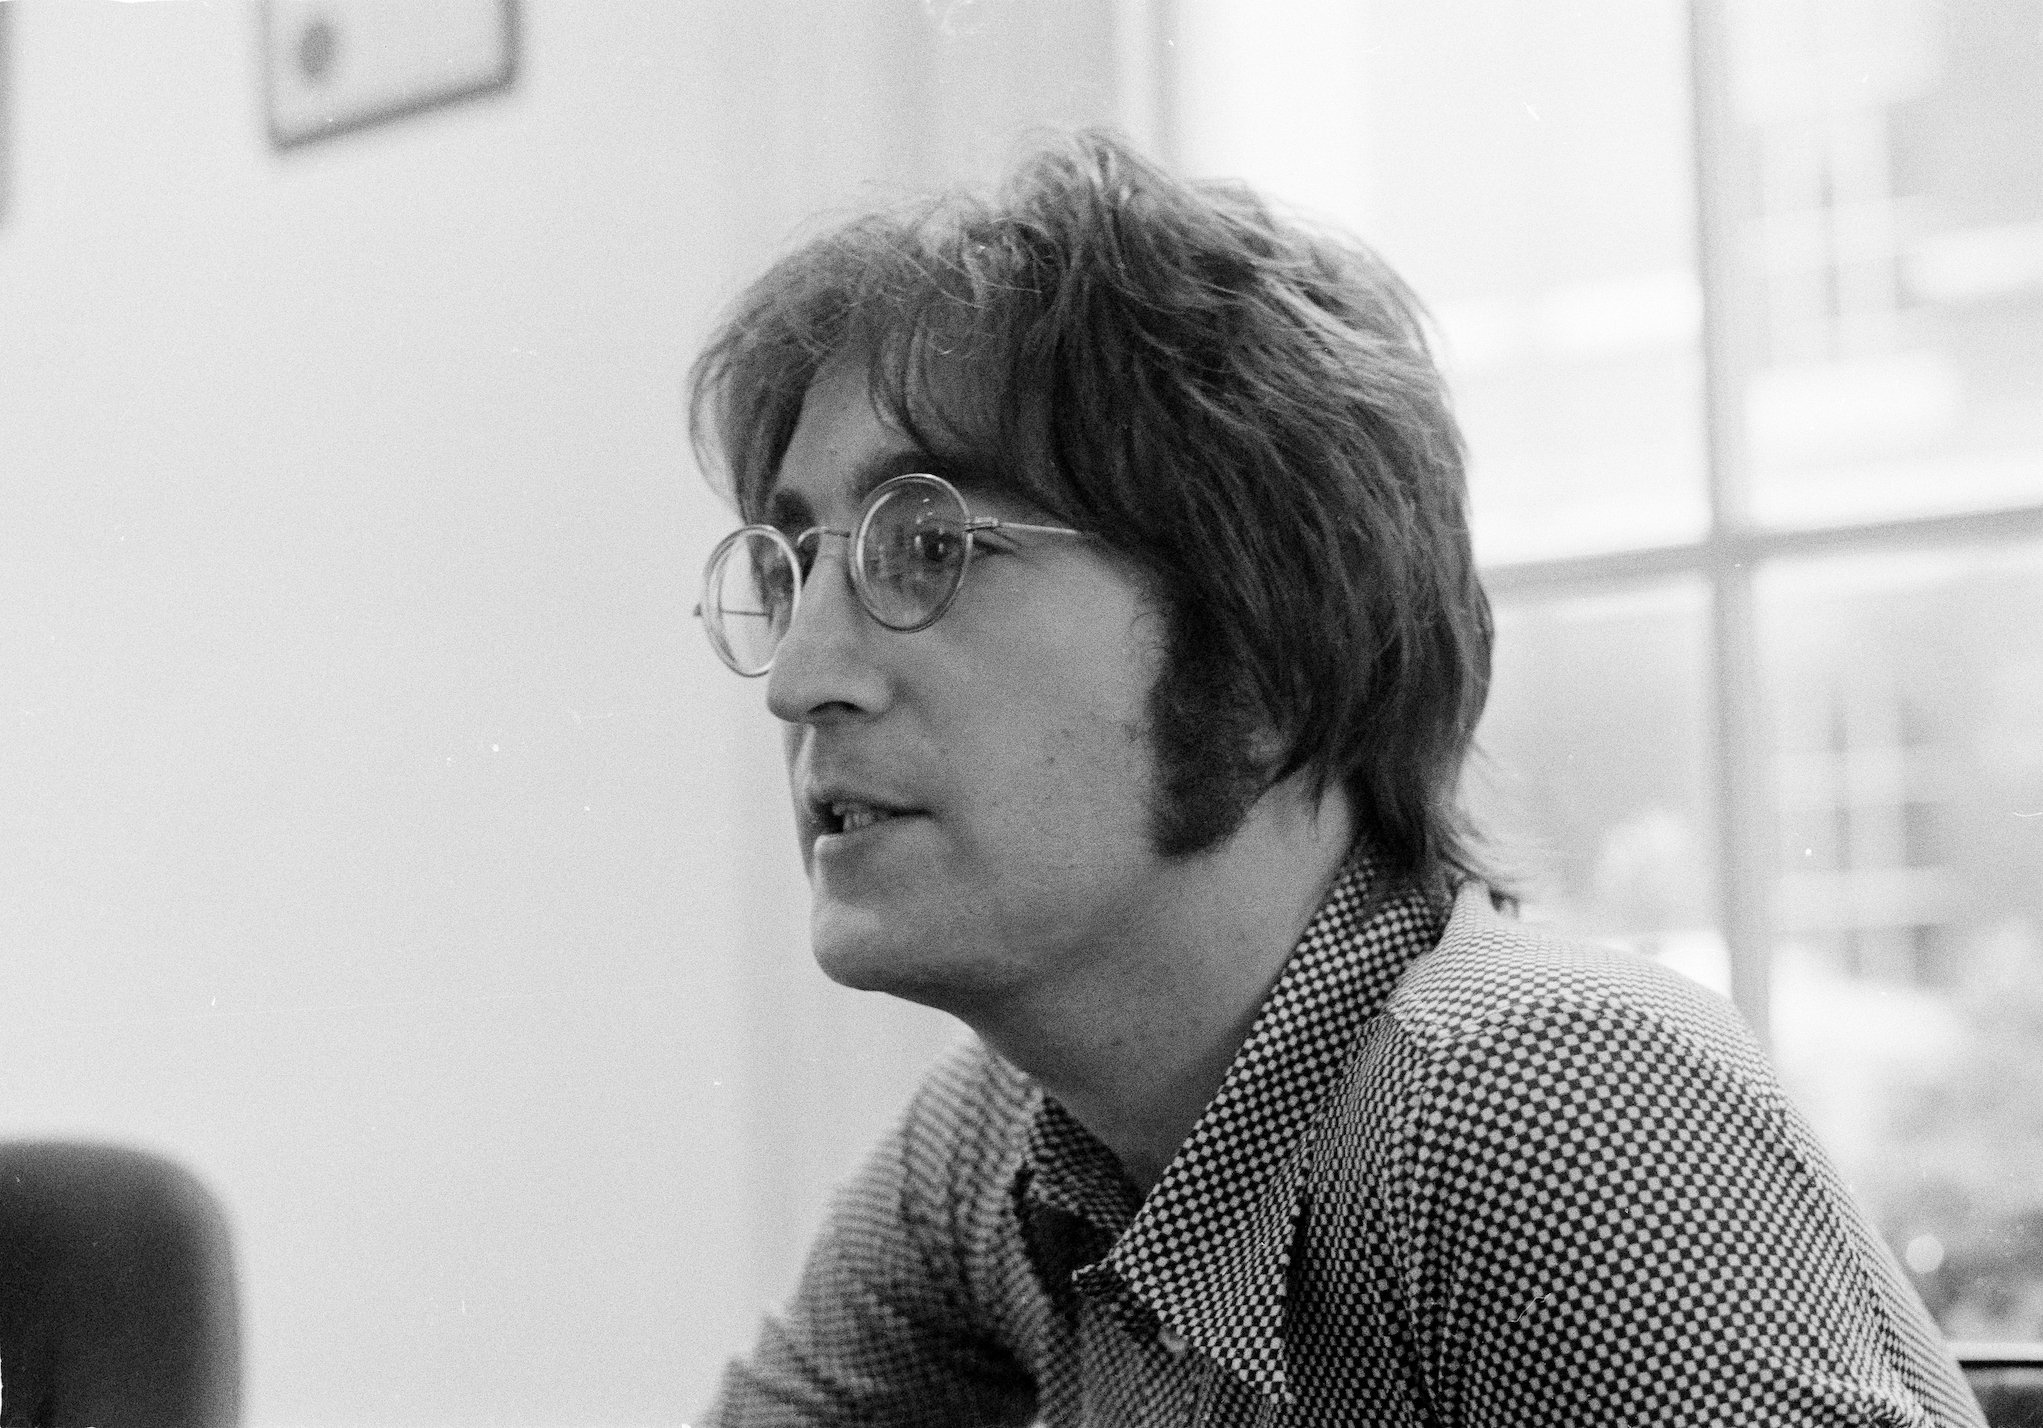 John Lennon being interviewed in London